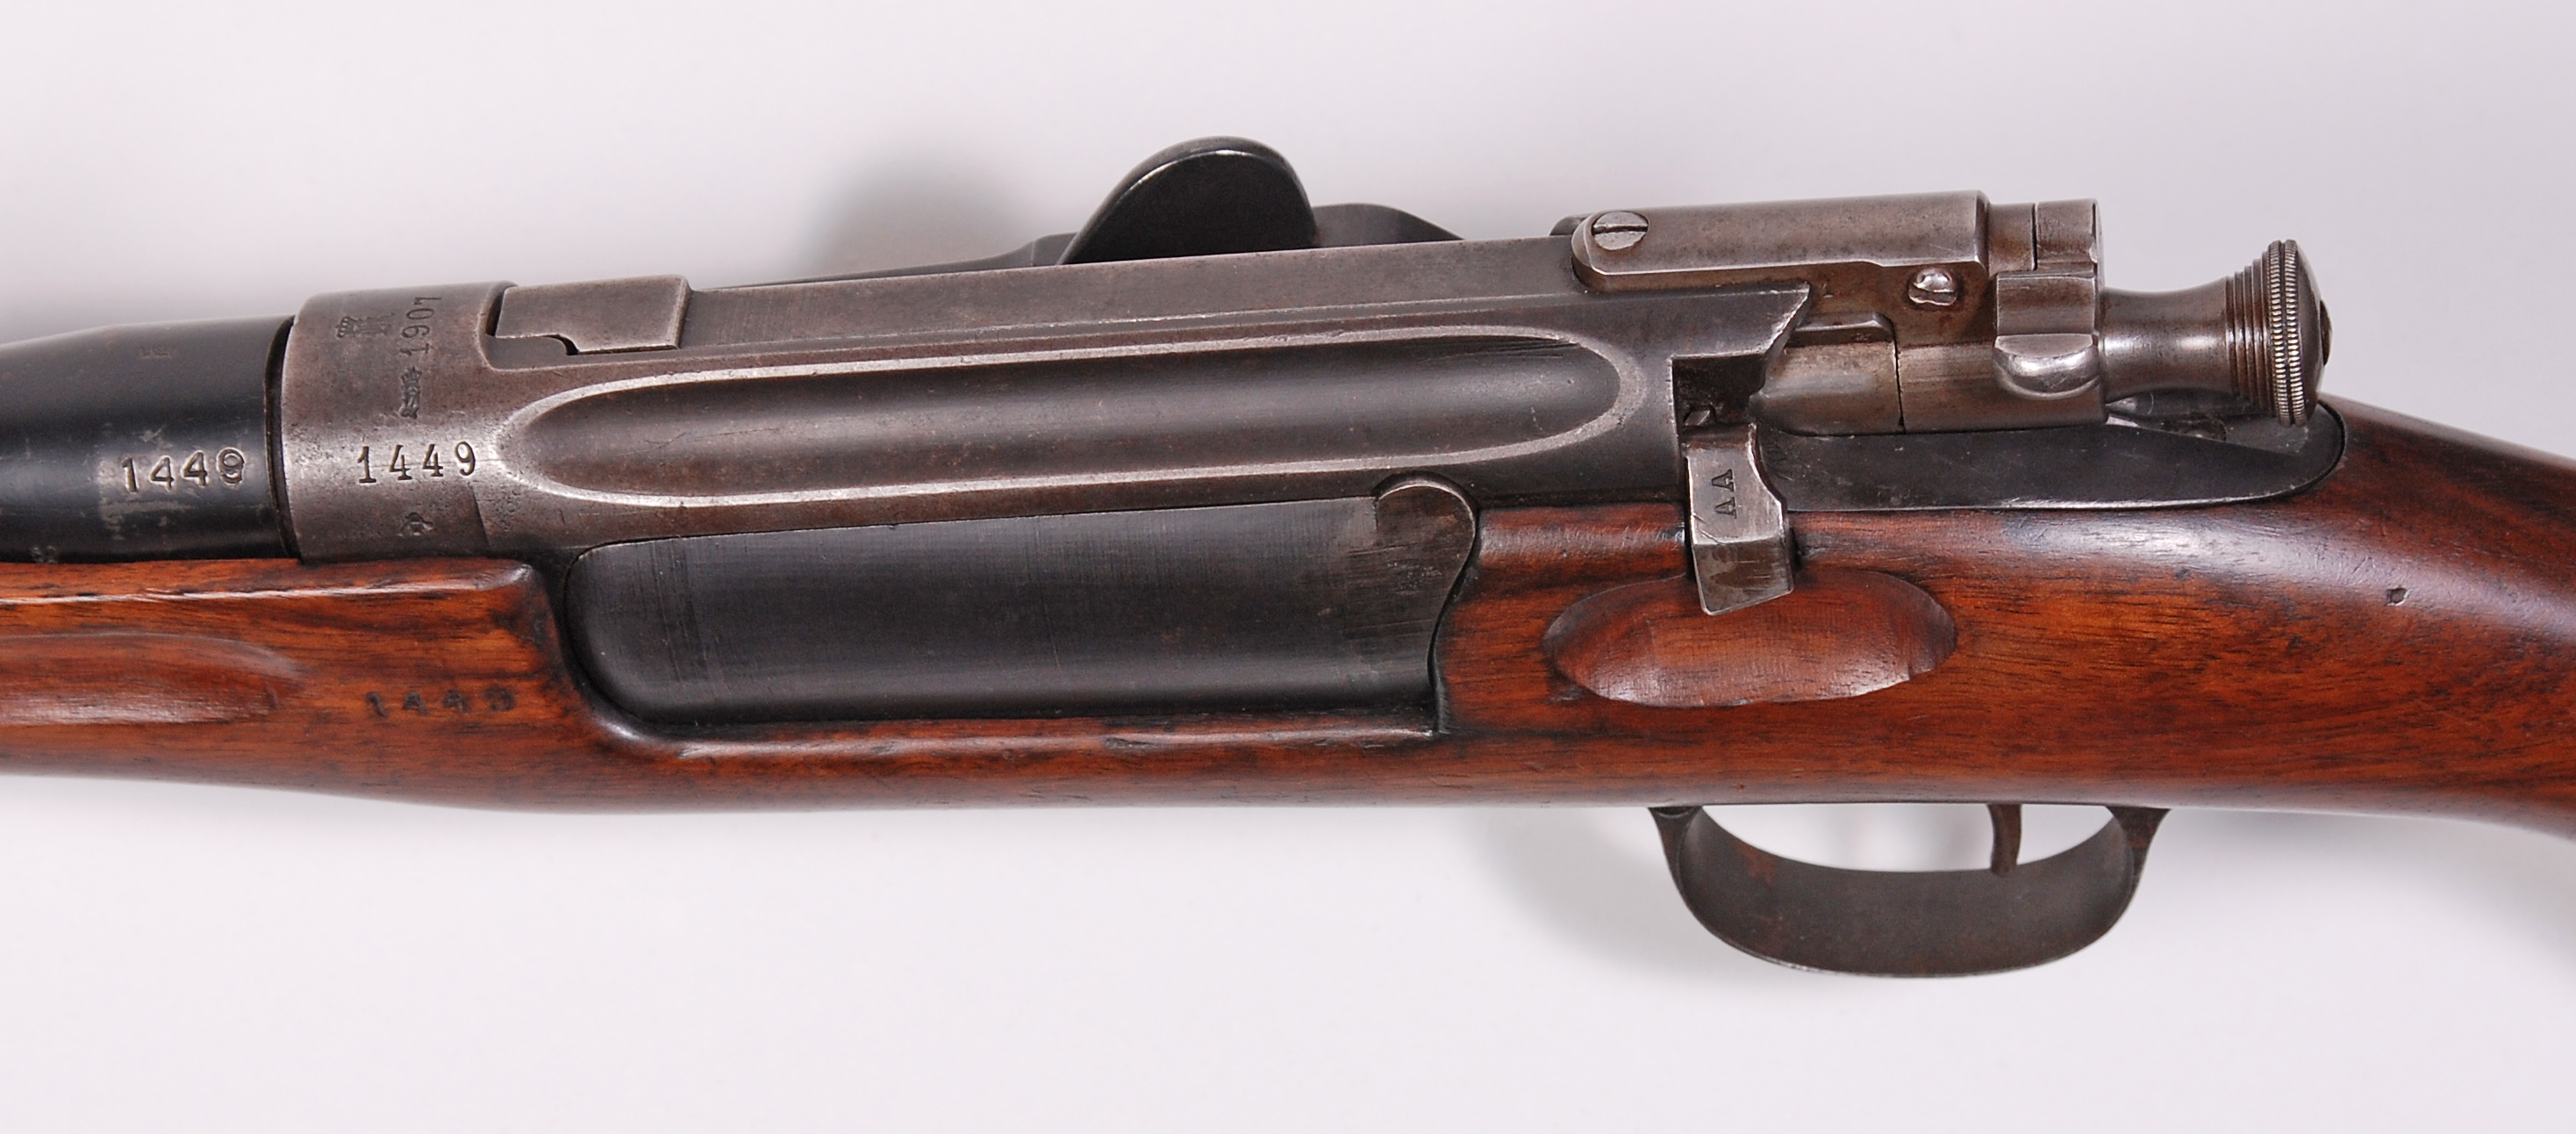 ./guns/rifle/bilder/Rifle-Kongsberg-Krag-M1906-1449-4.jpg